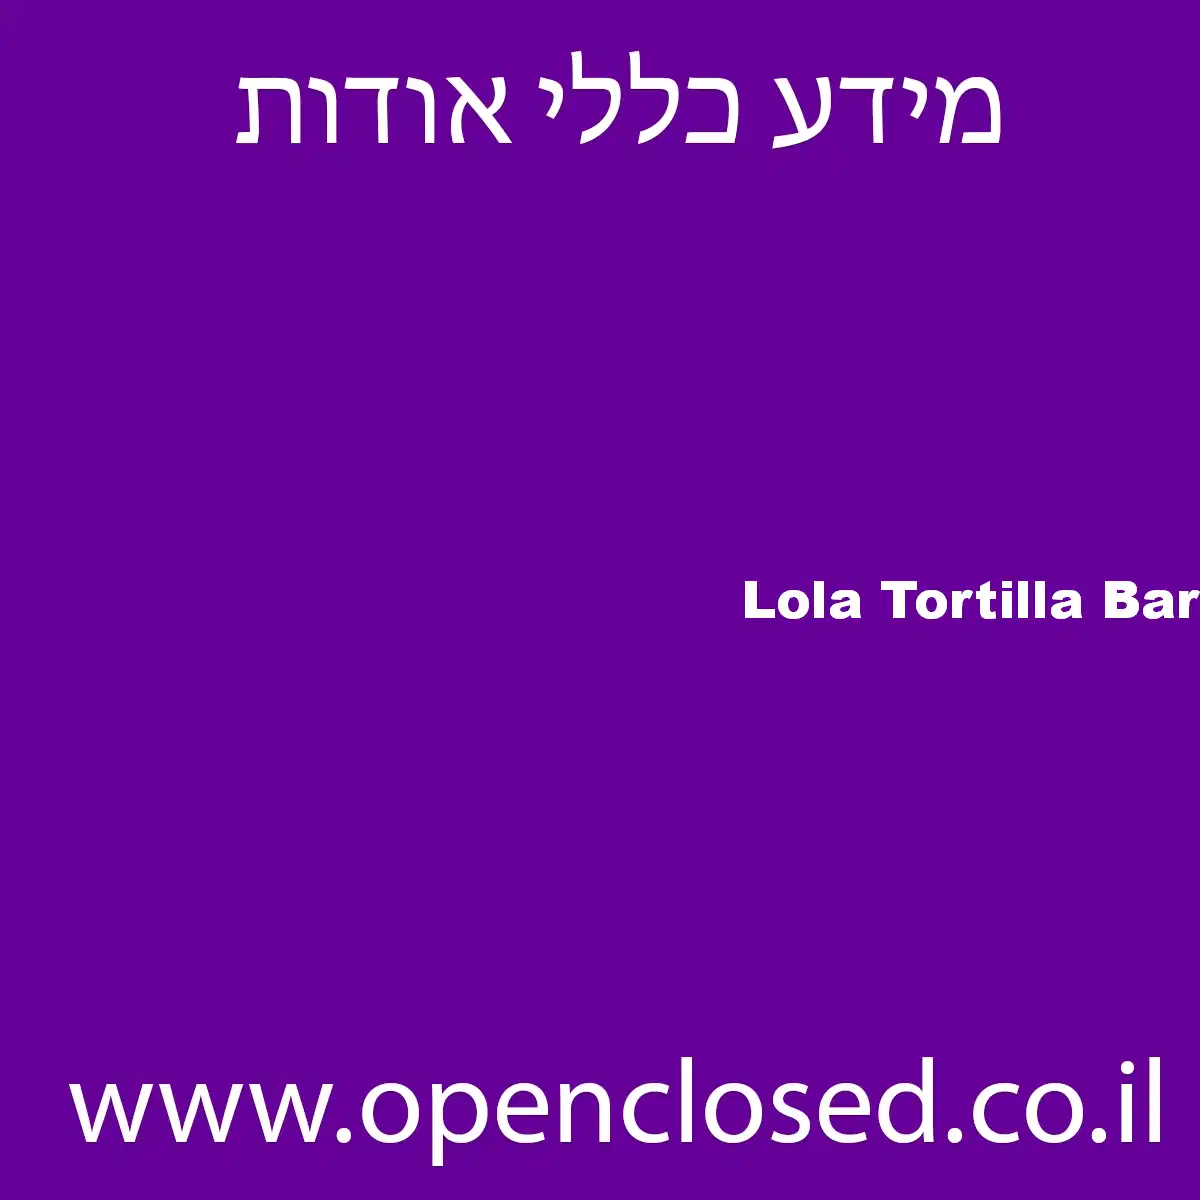 Lola Tortilla Bar